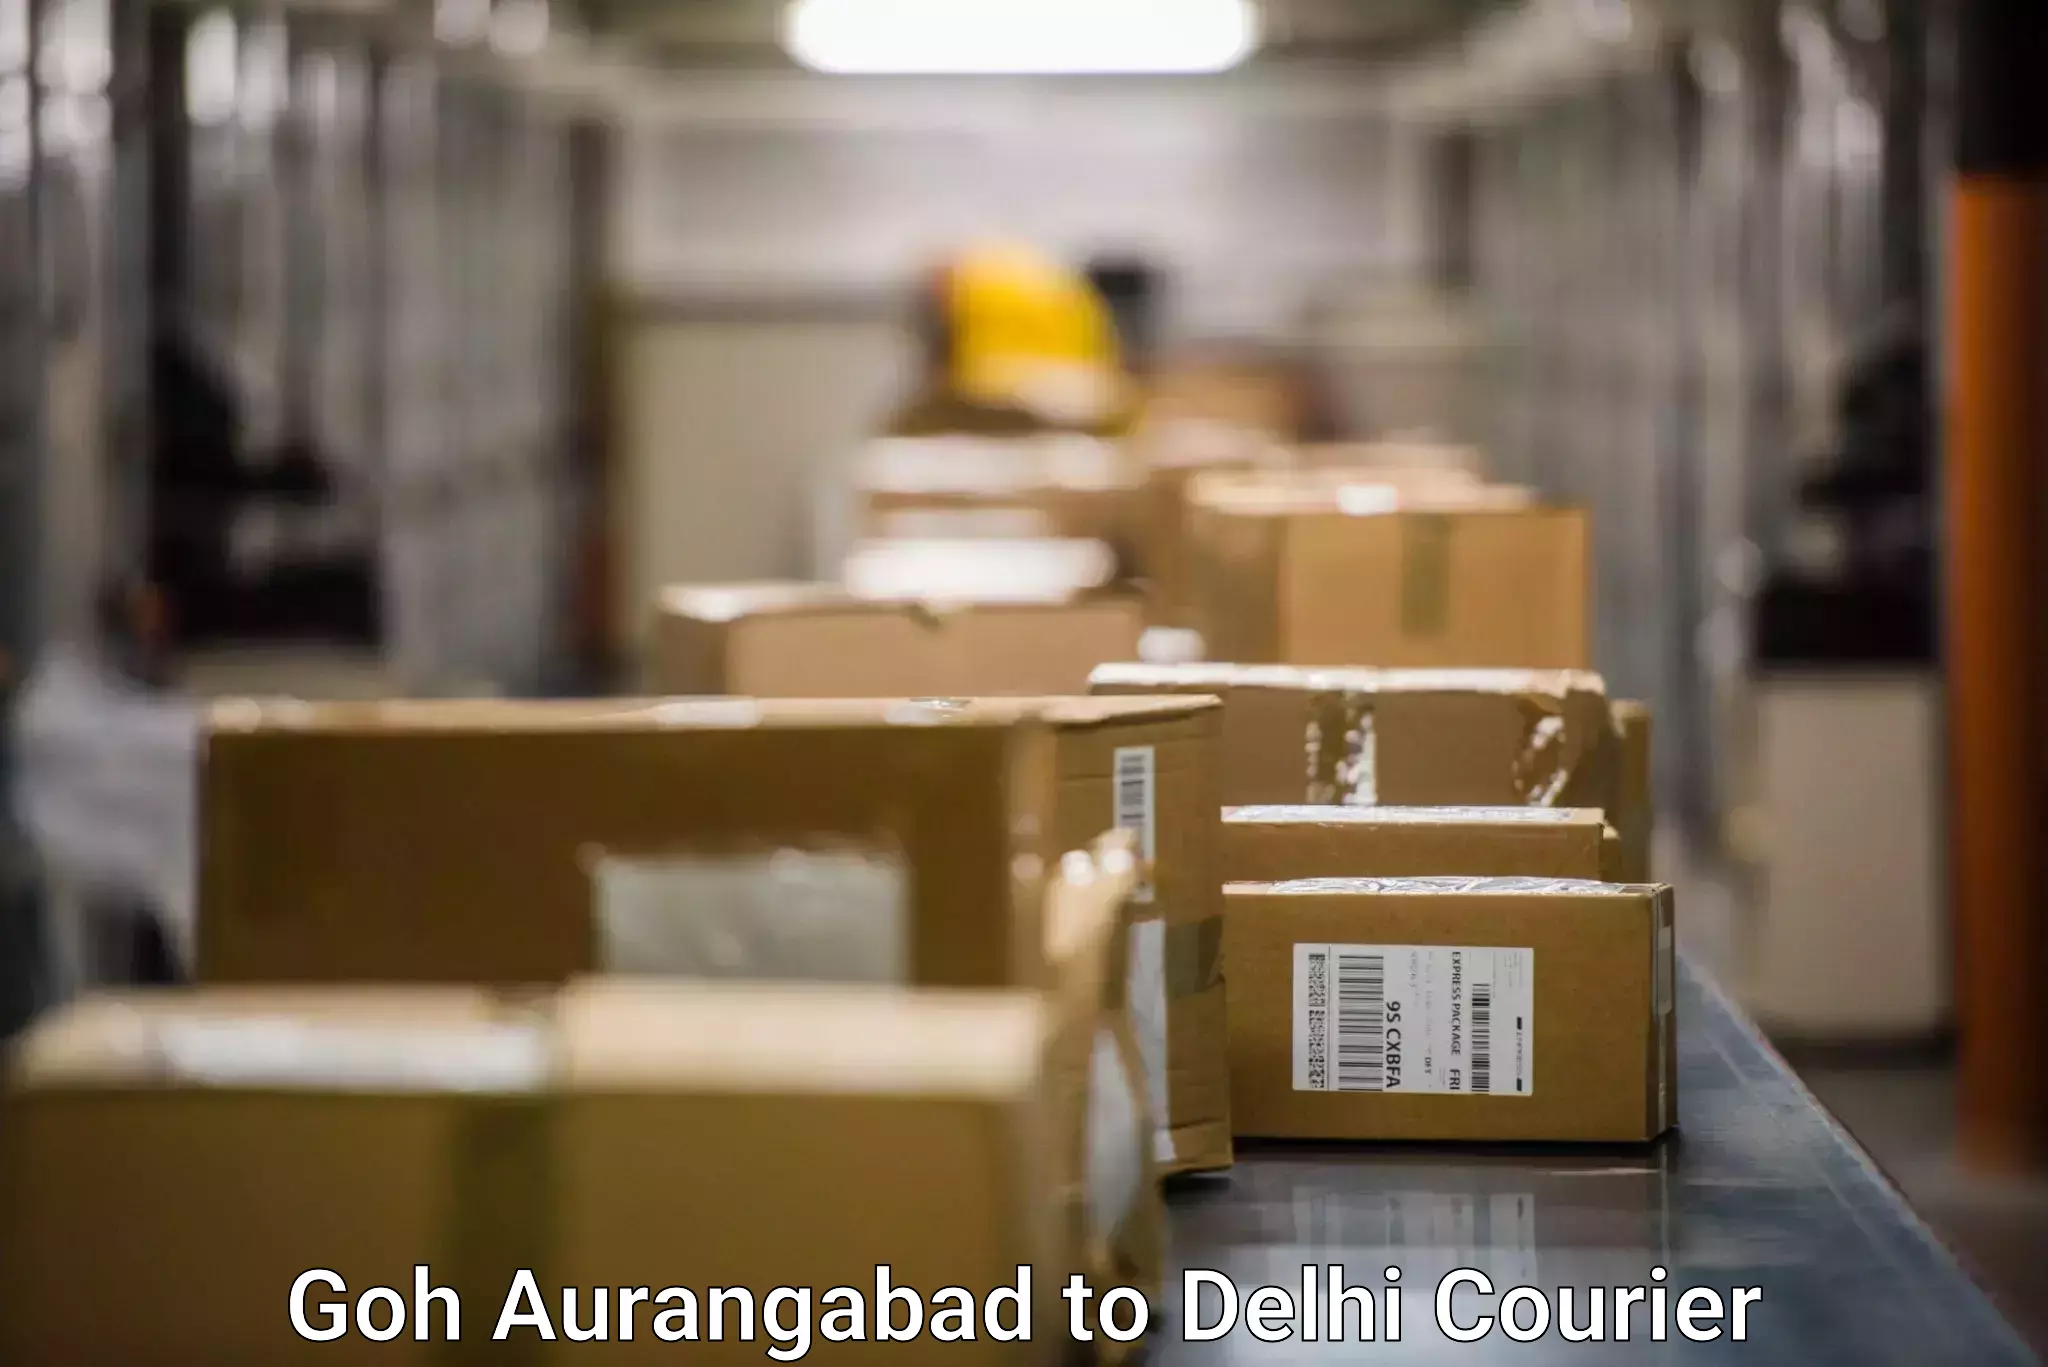 Speedy delivery service in Goh Aurangabad to Subhash Nagar